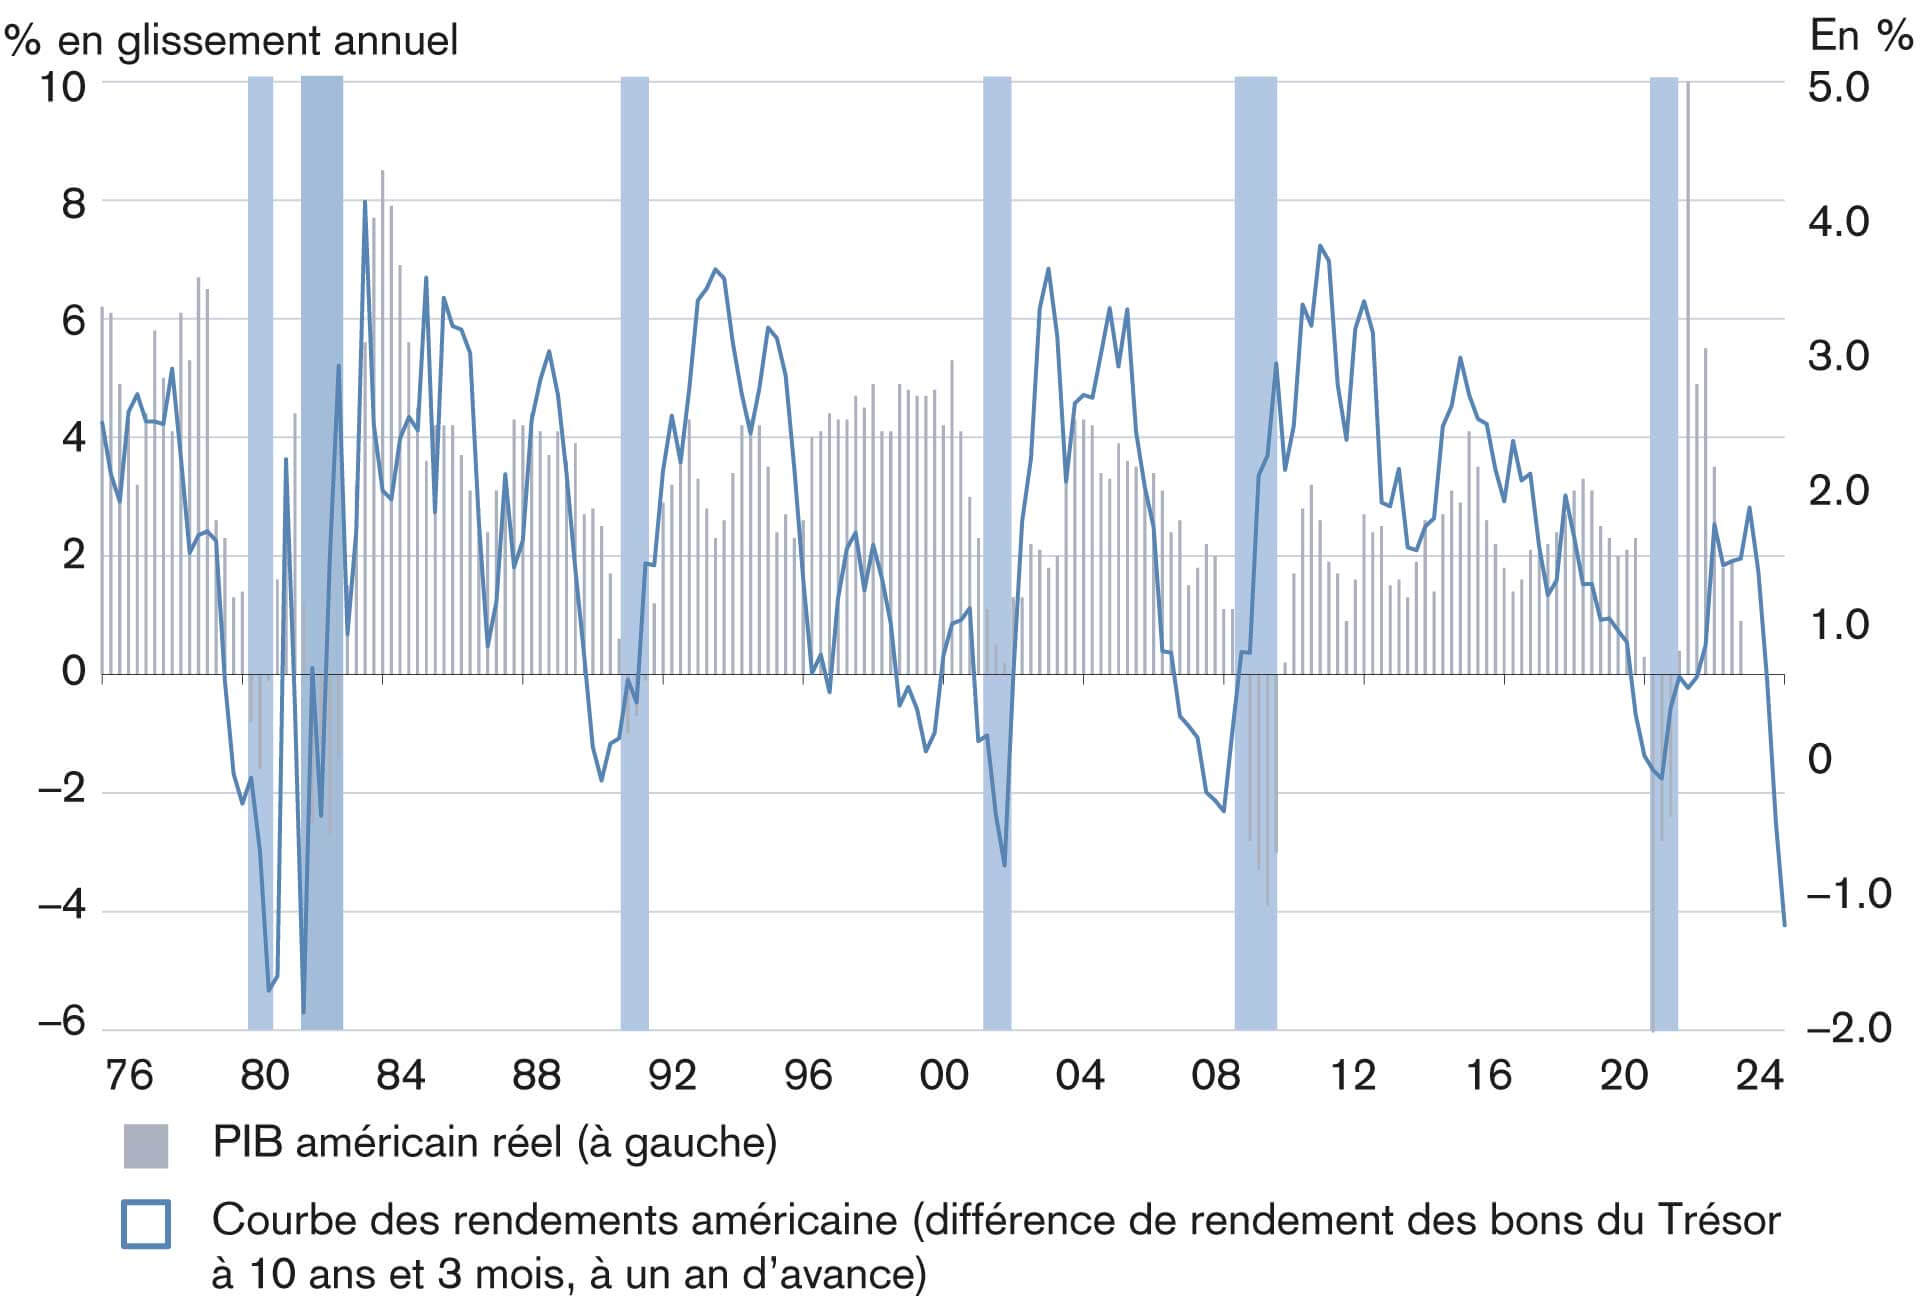 Inversion de la courbe des rendements américaine, généralement suivie d’une récession